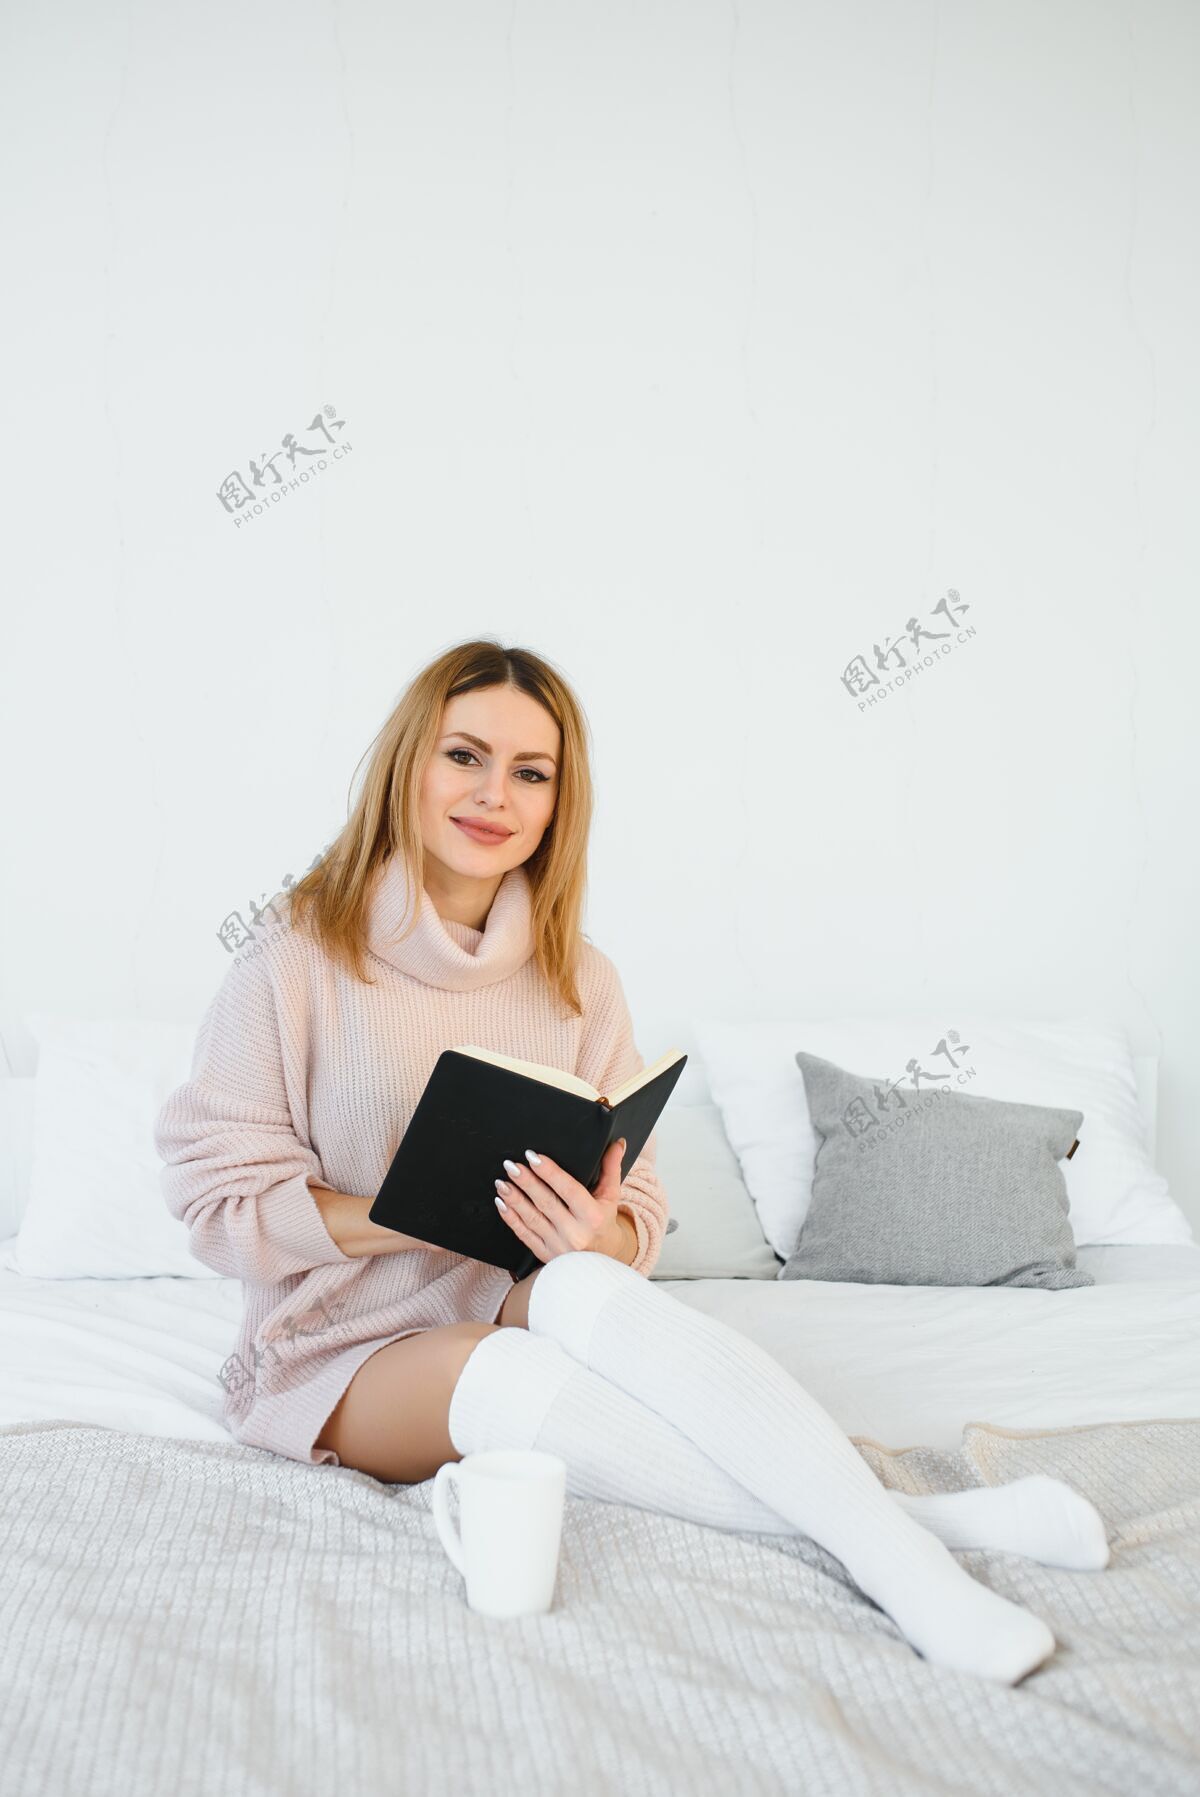 灯一个女人在看书 坐在椅子上微笑bed.the她旁边桌子上的闹钟放松阅读漂亮